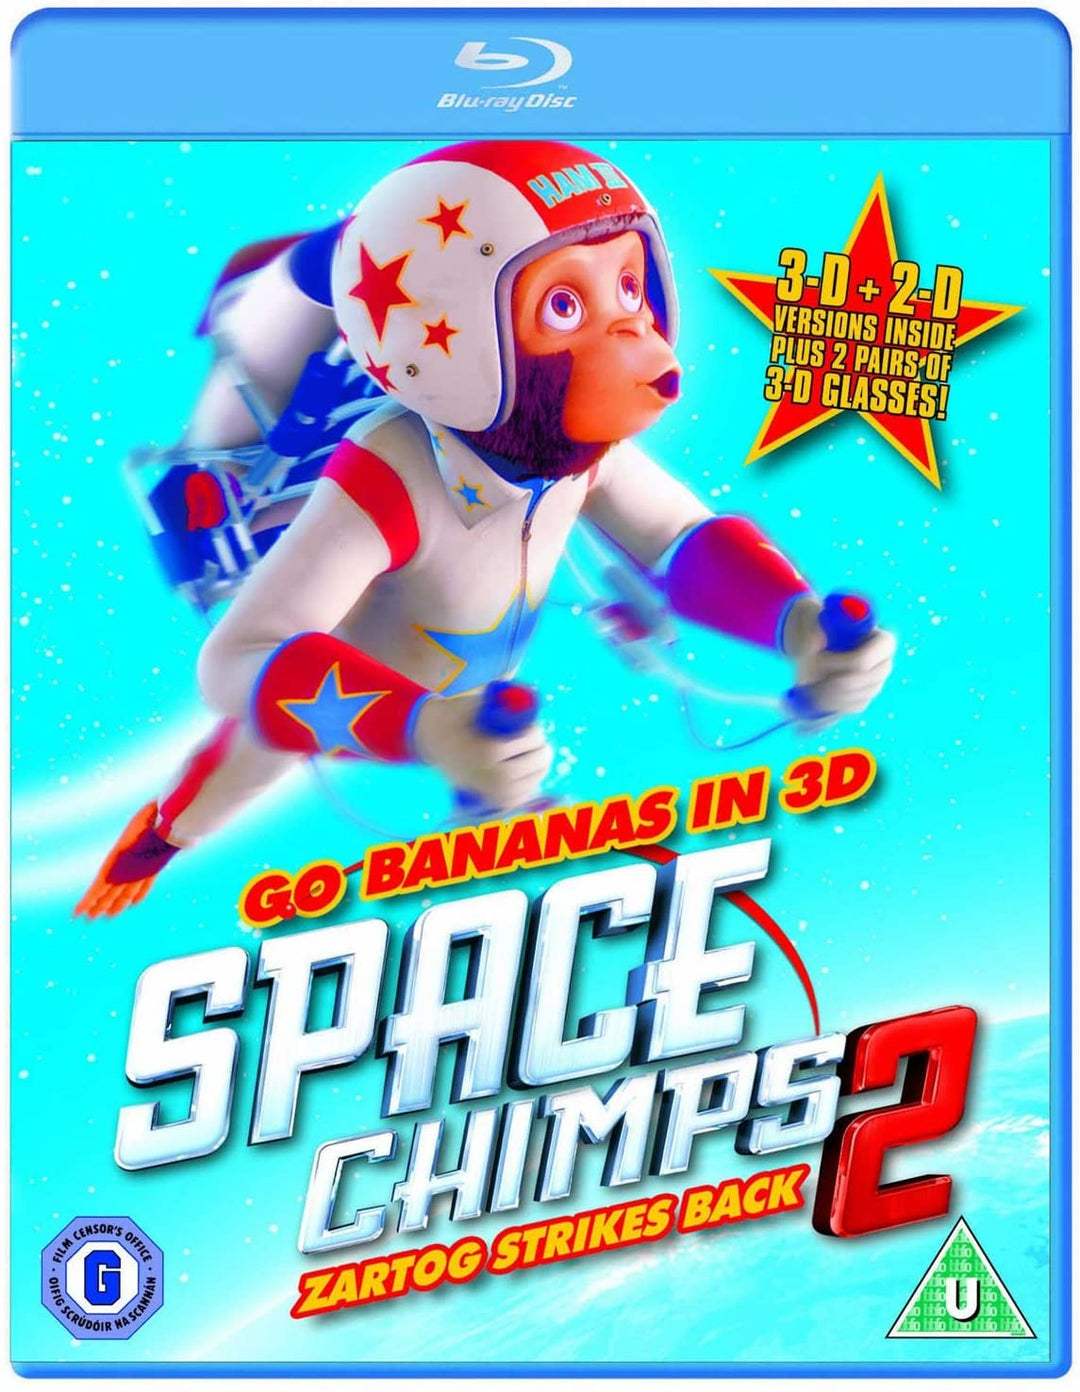 Space Chimps 2 - Zartog schlägt zurück [Blu-ray]